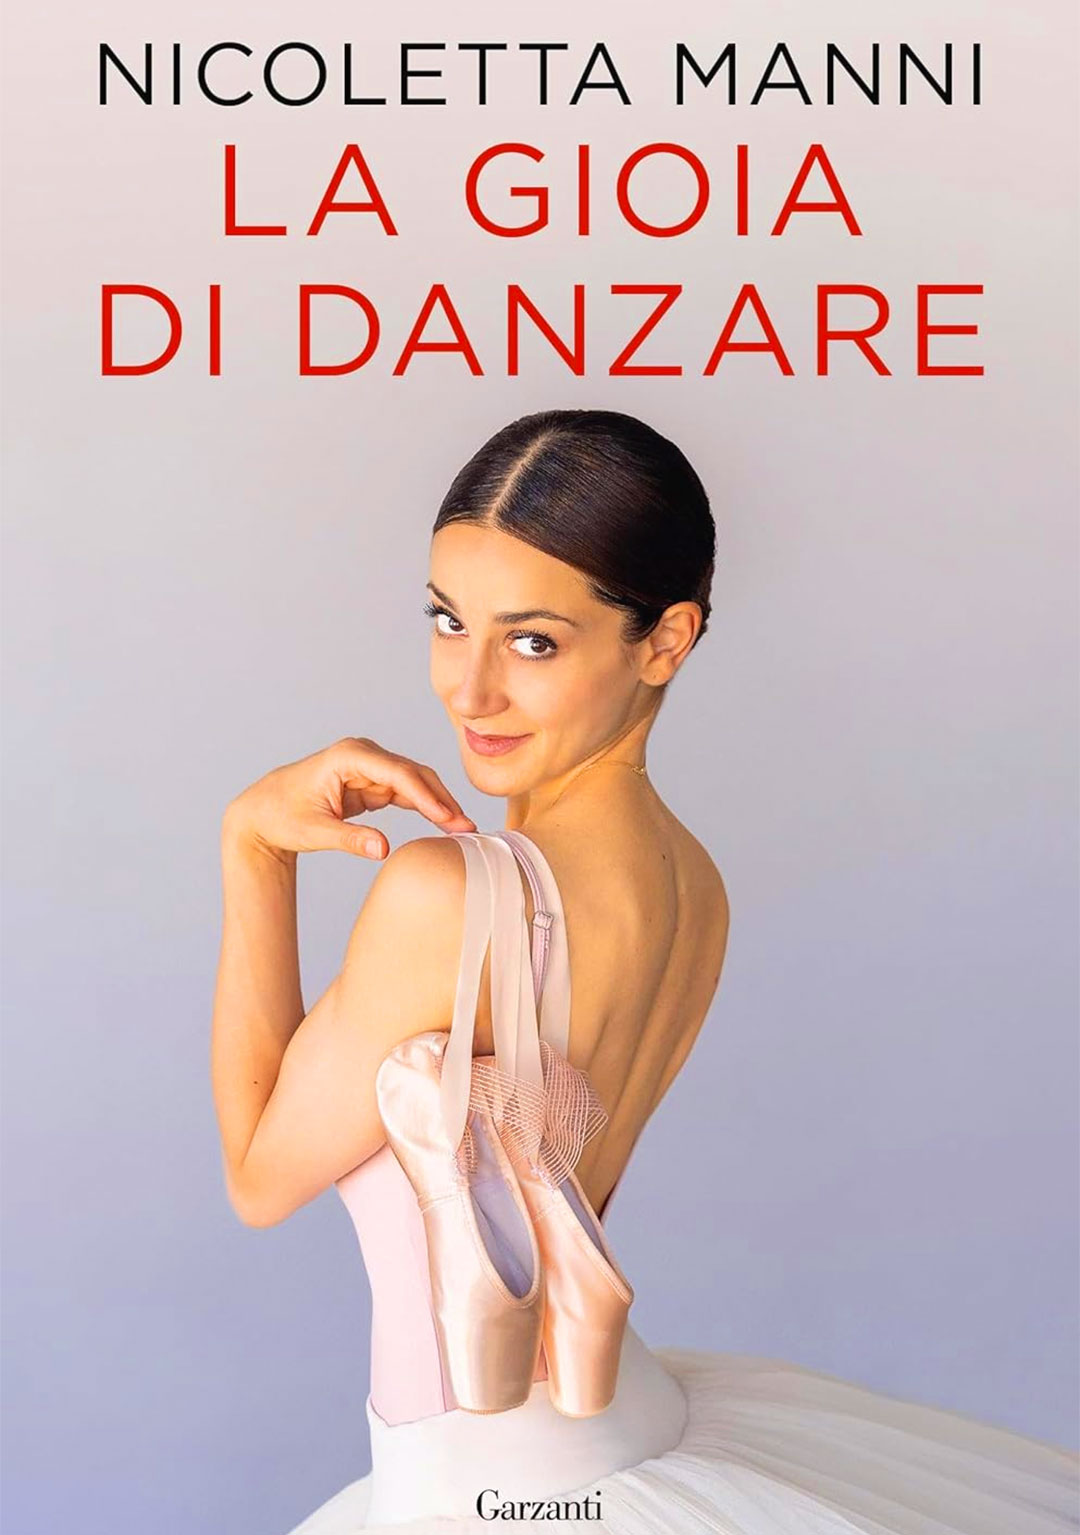 Nicoletta Manni, copertina del libro